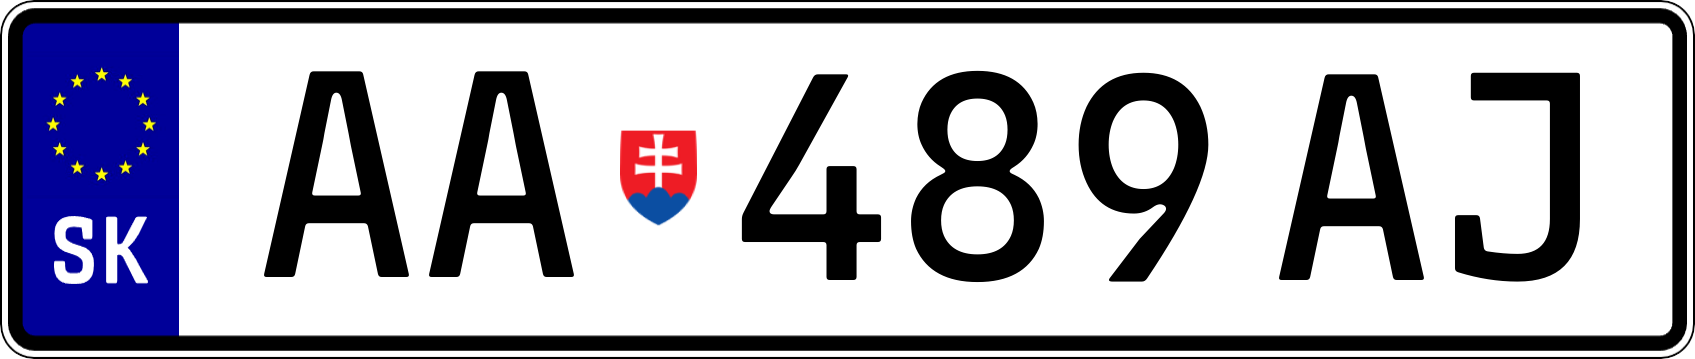 AA489AJ